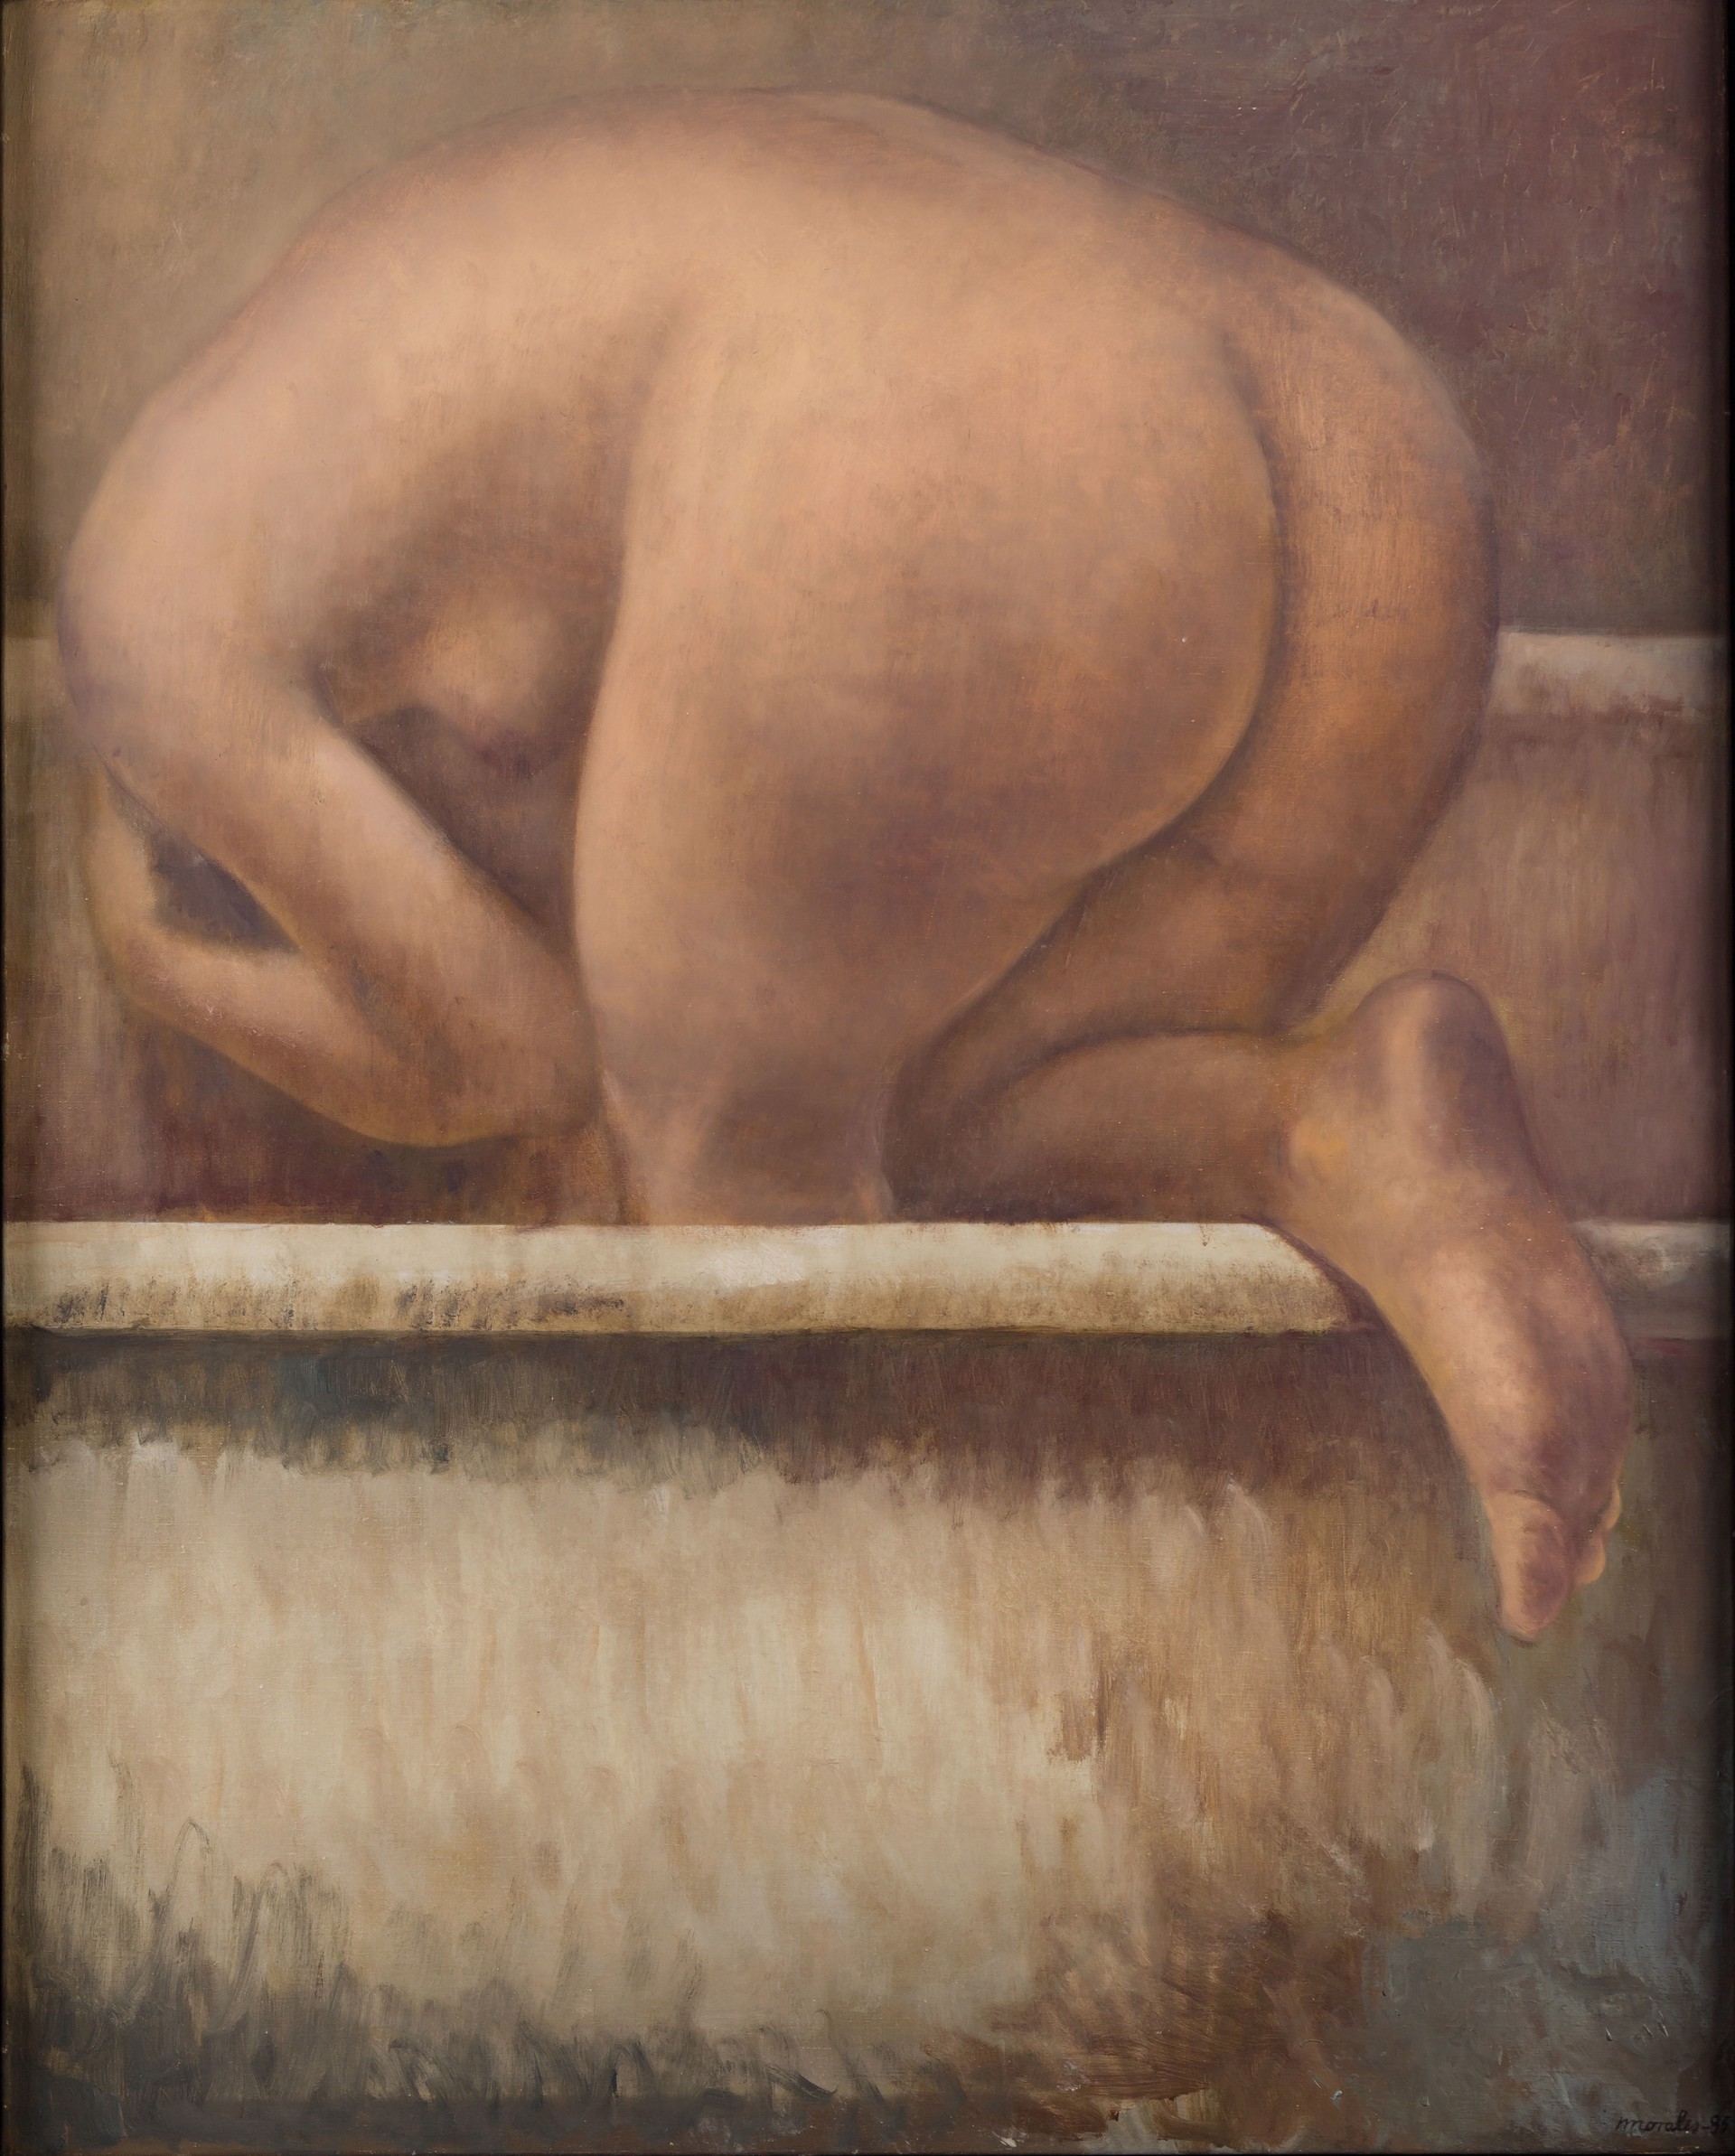 Mujer en la bañera by Darío Morales